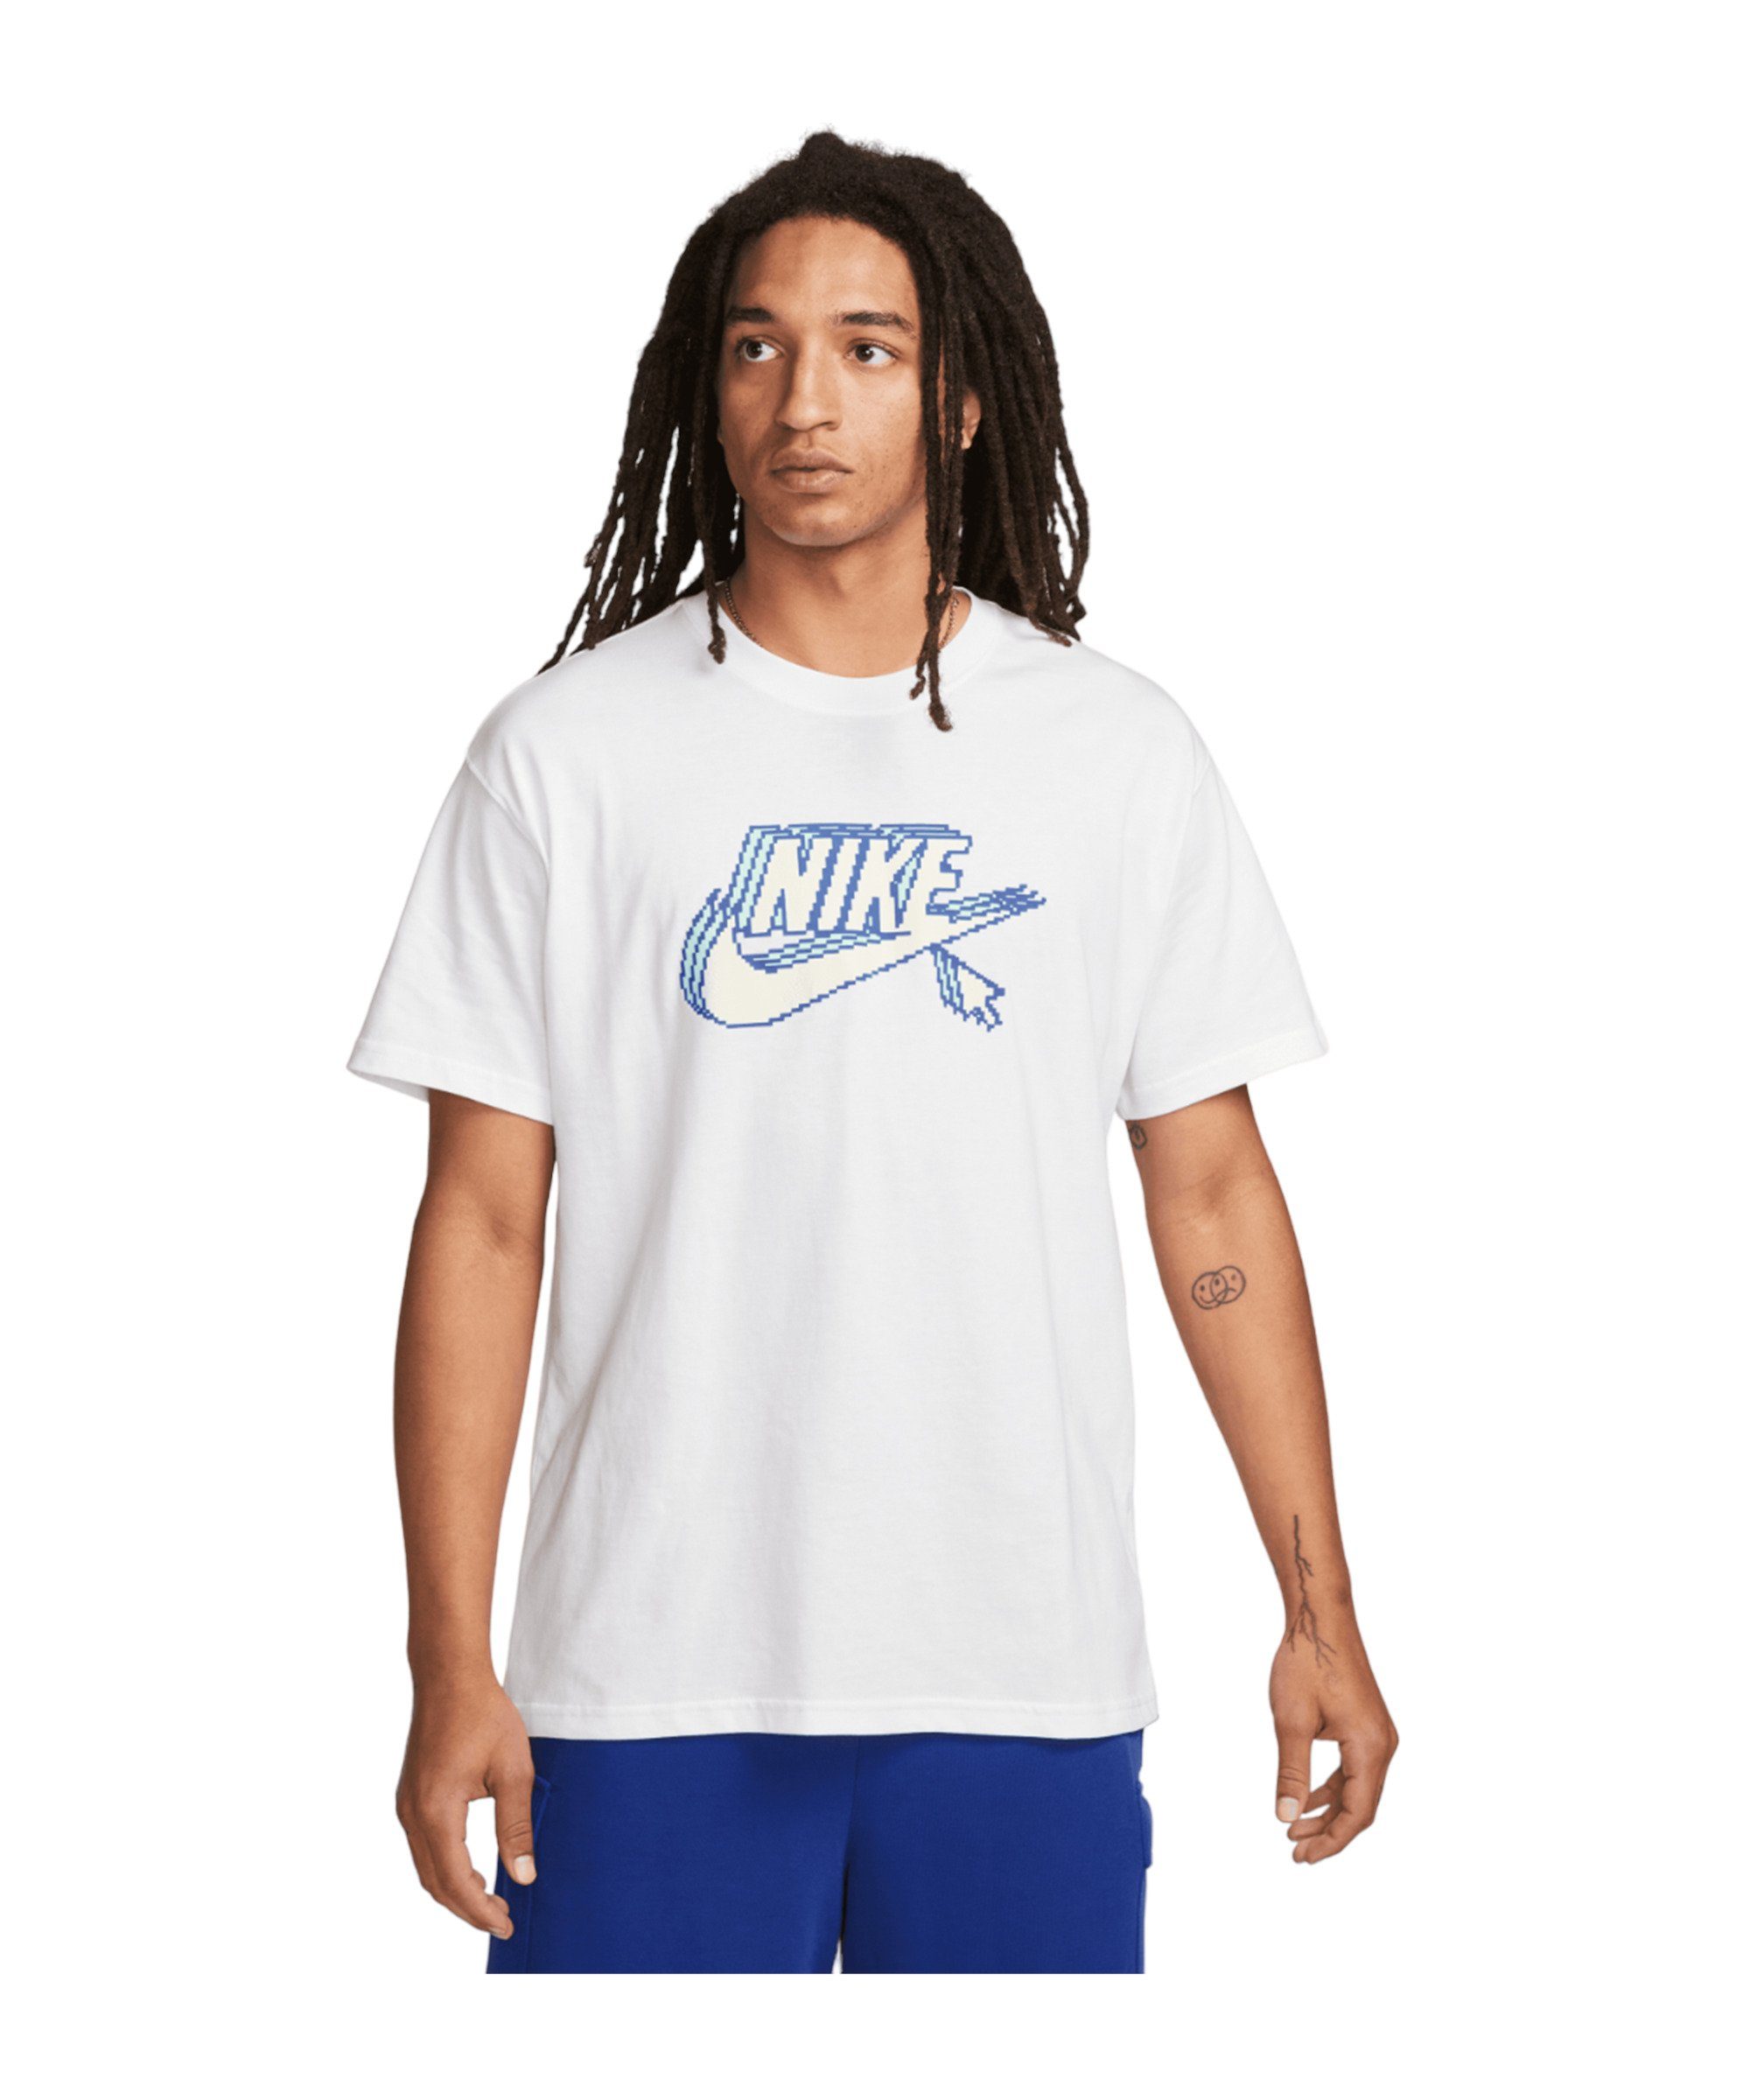 Nike Sportswear T-Shirt Max90 default T-Shirt weiss